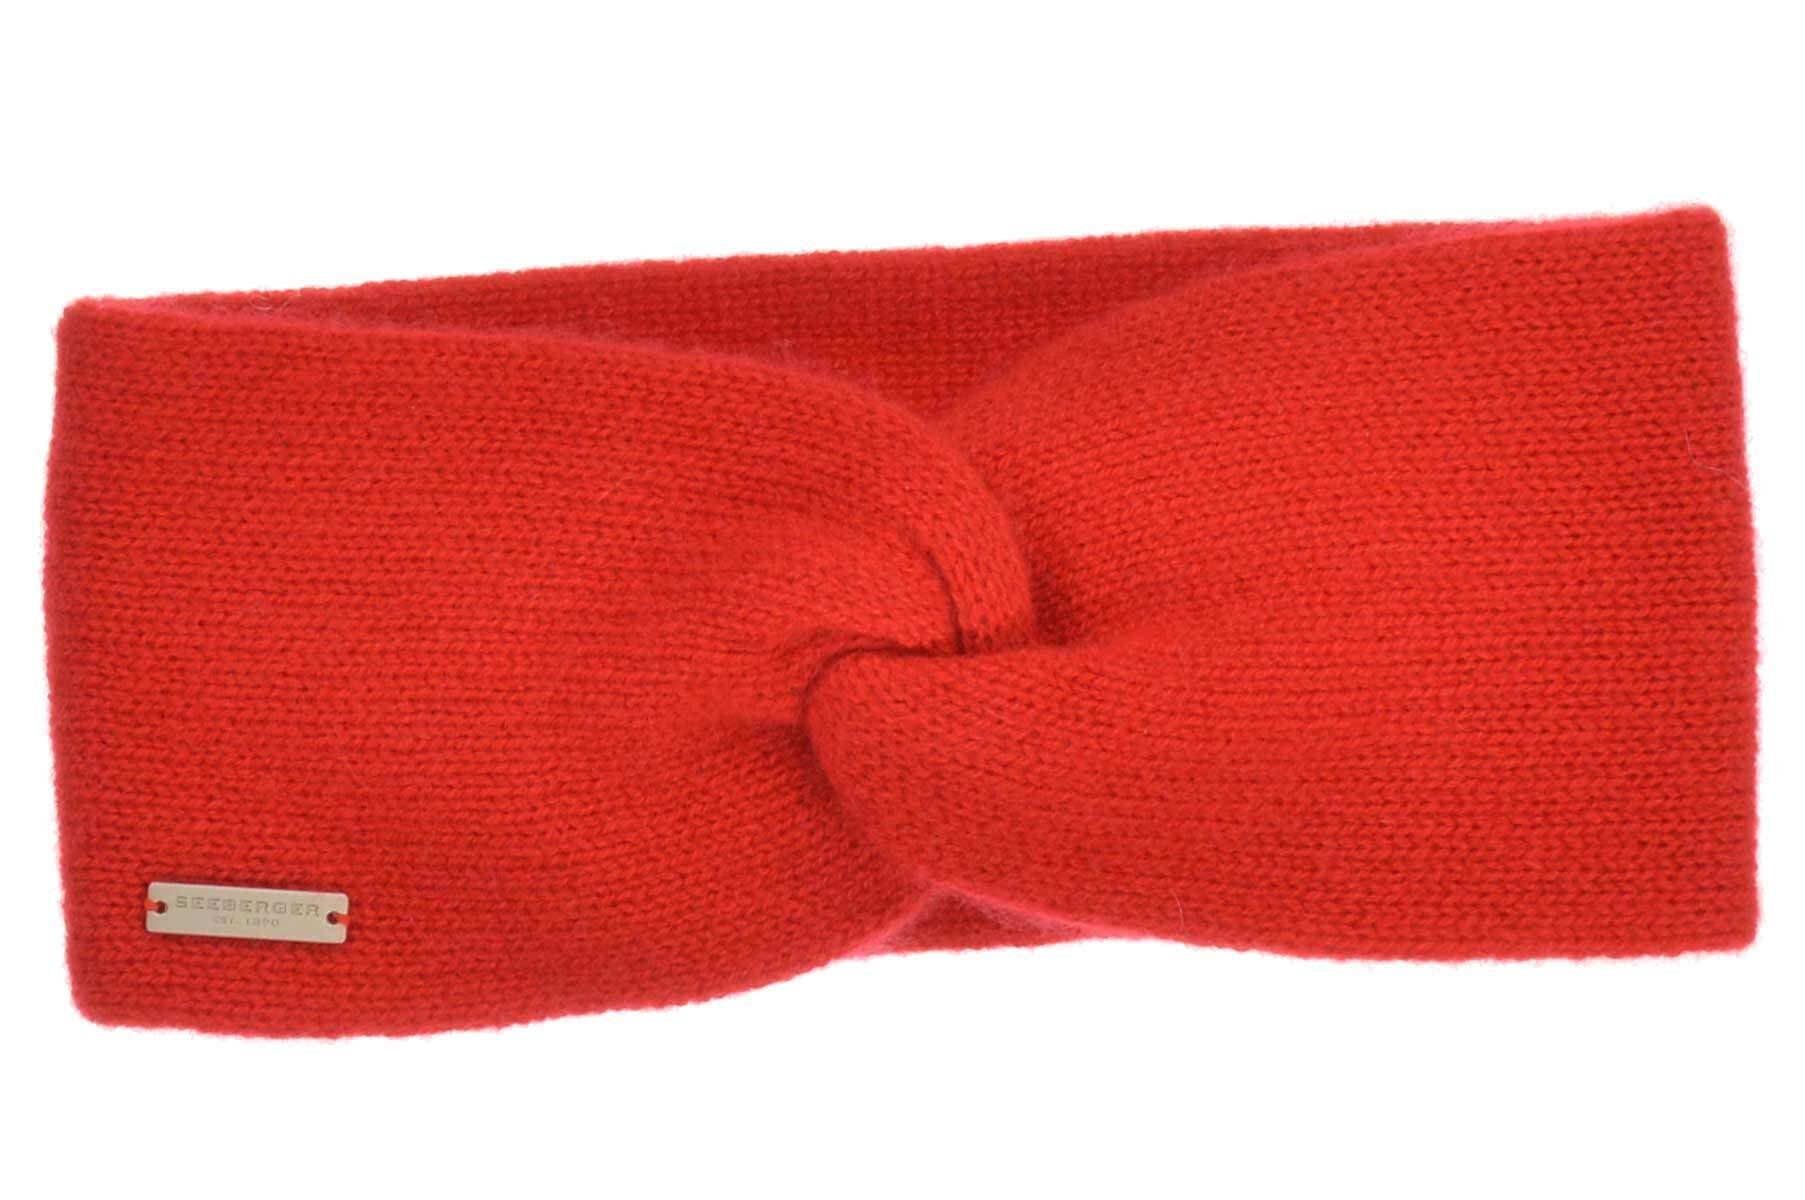 Seeberger Stirnband Cashmere Stirnband mit Knotendetail 17325-0 rubin